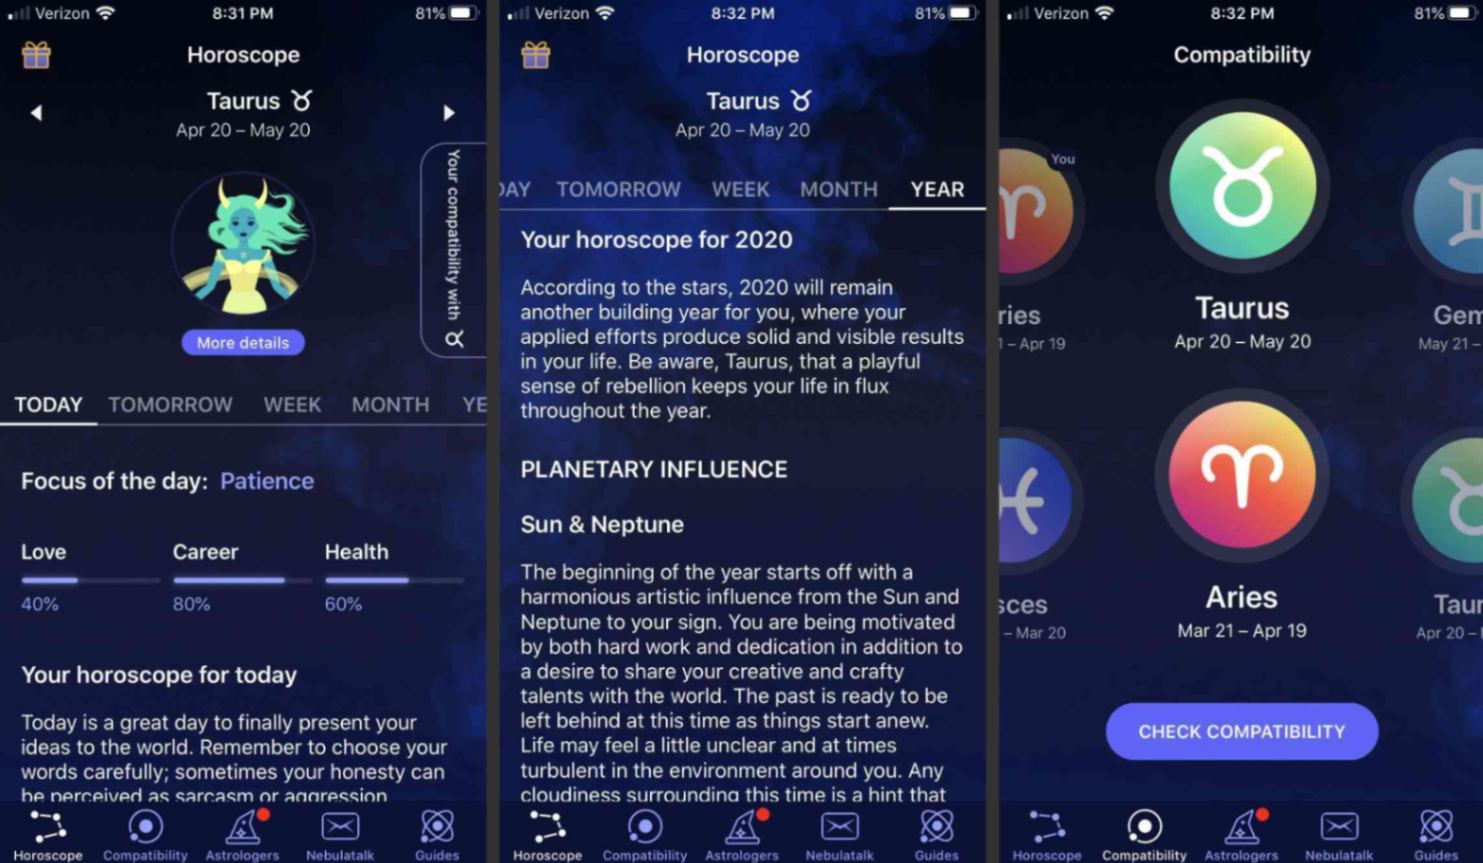 Nebula App - The Most Accurate Zodiac Predictions